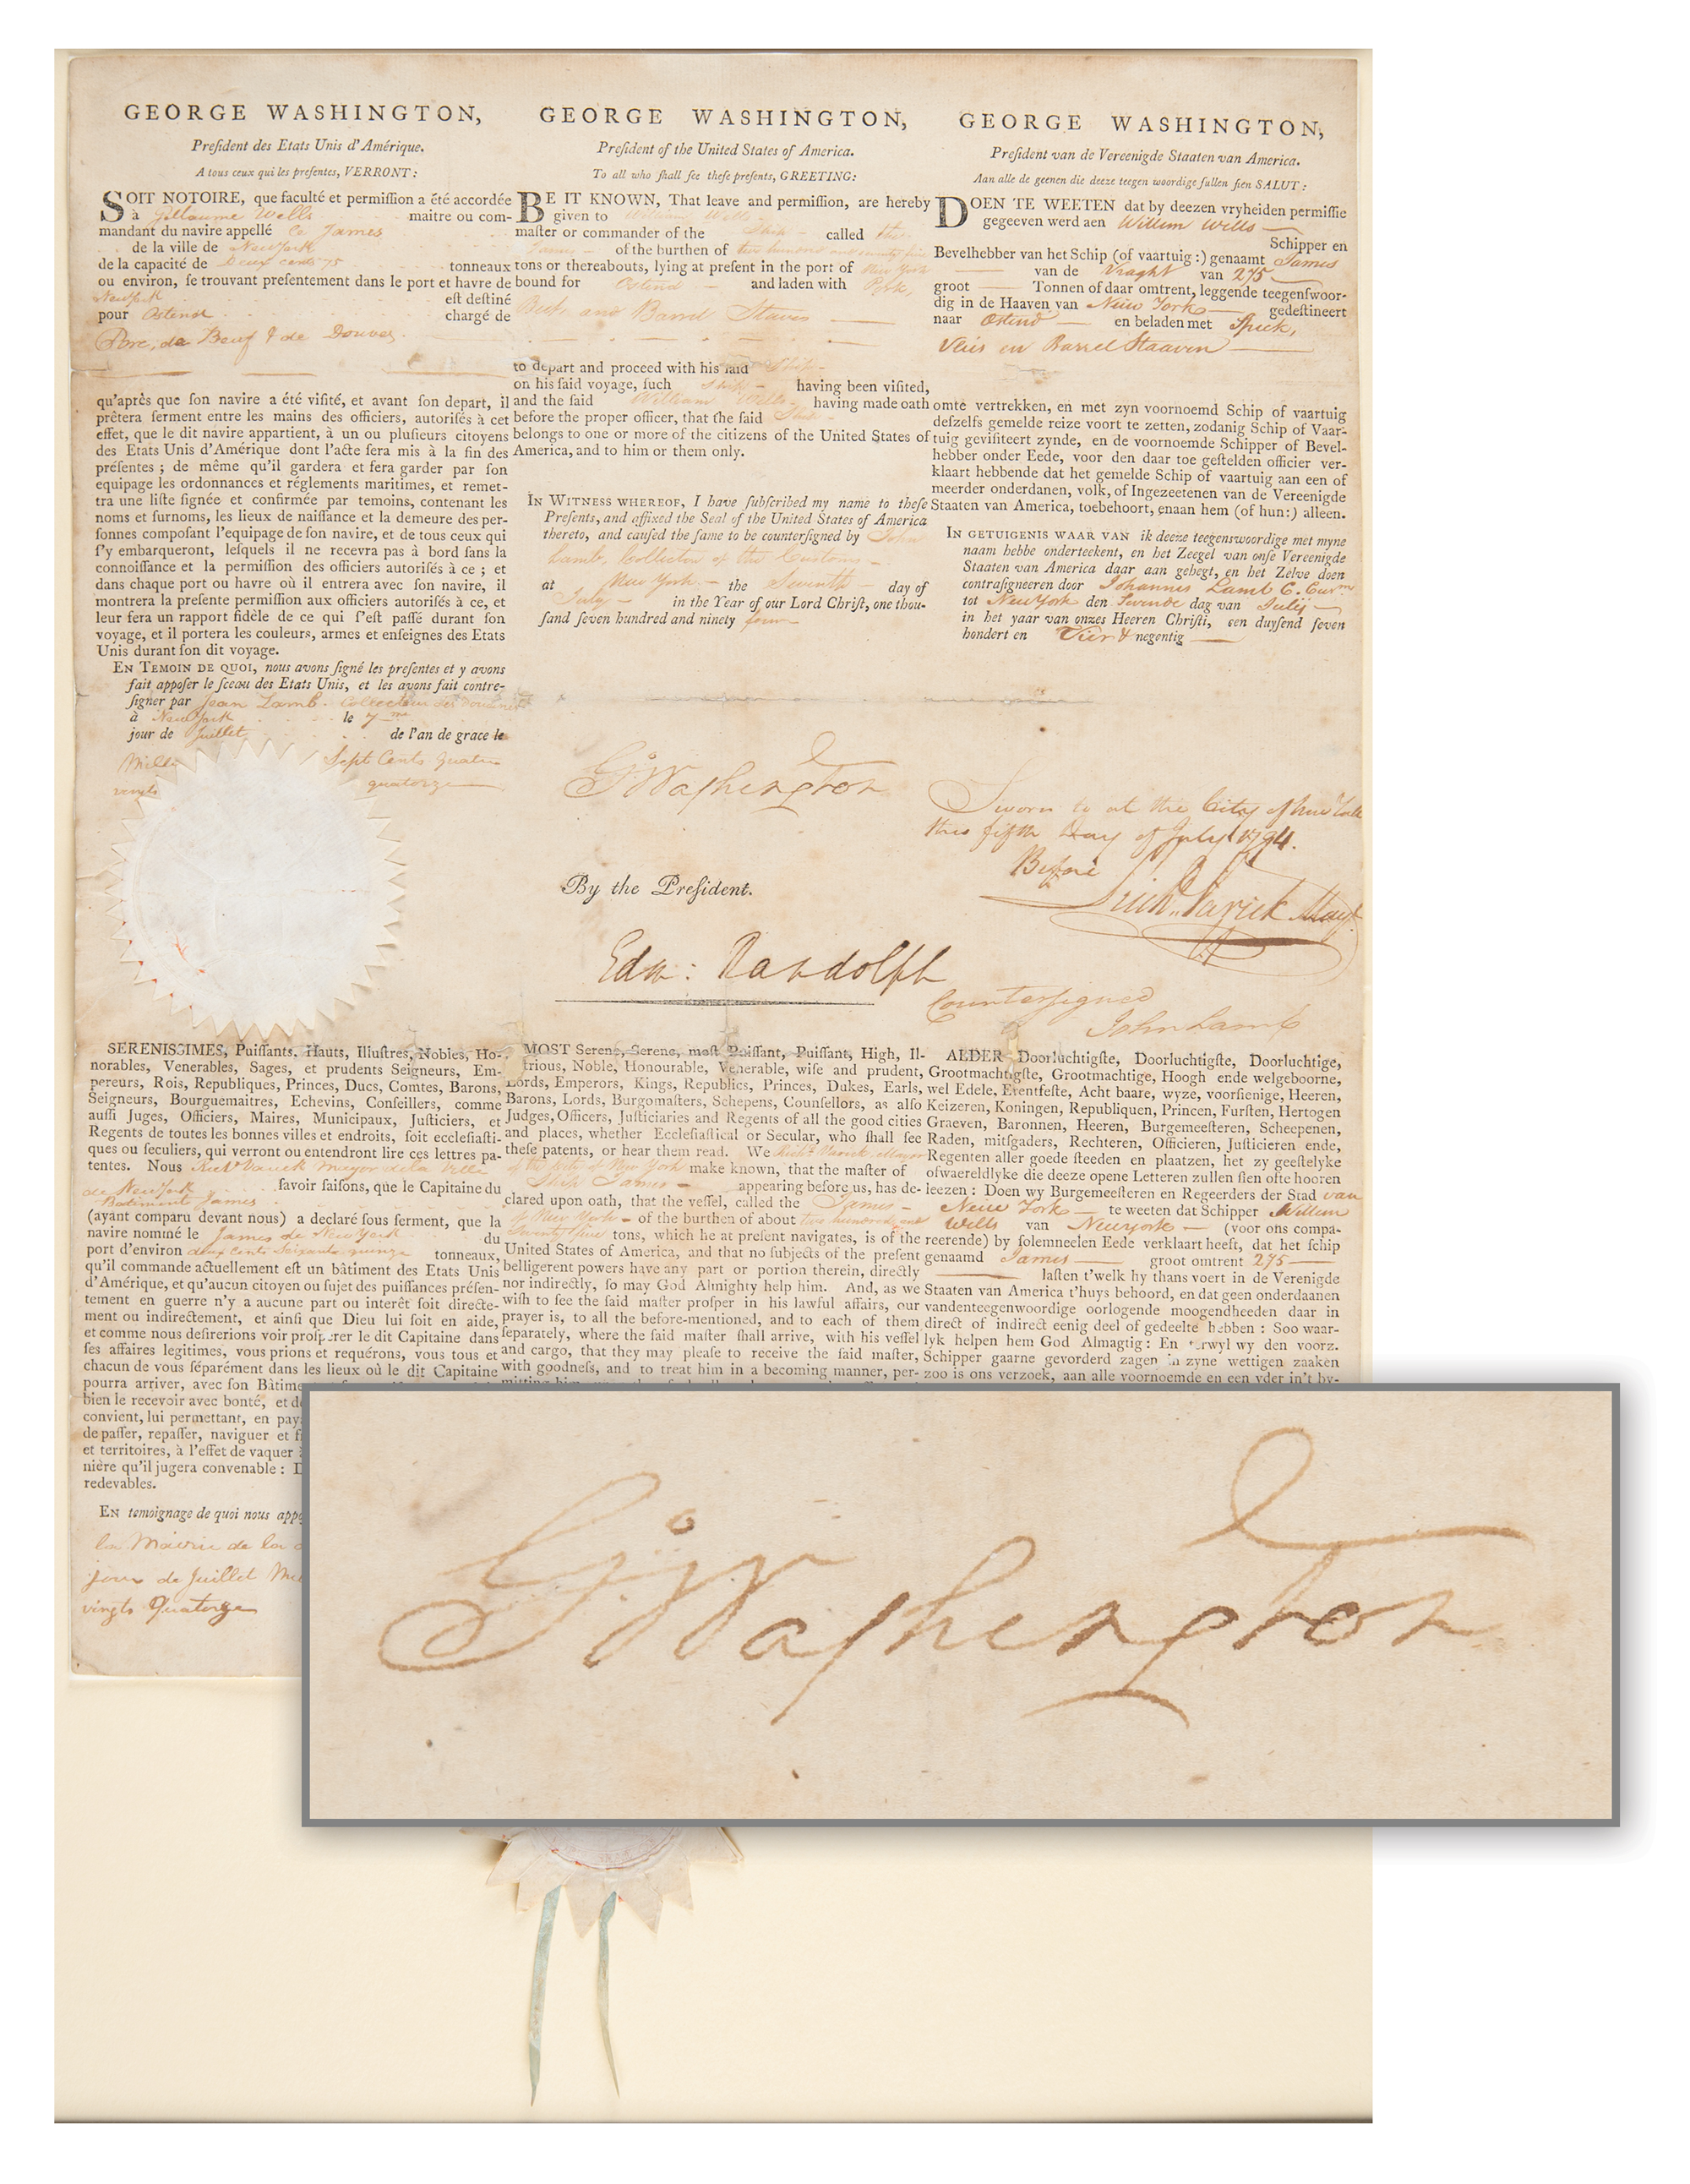 Lot #1 George Washington Document Signed as